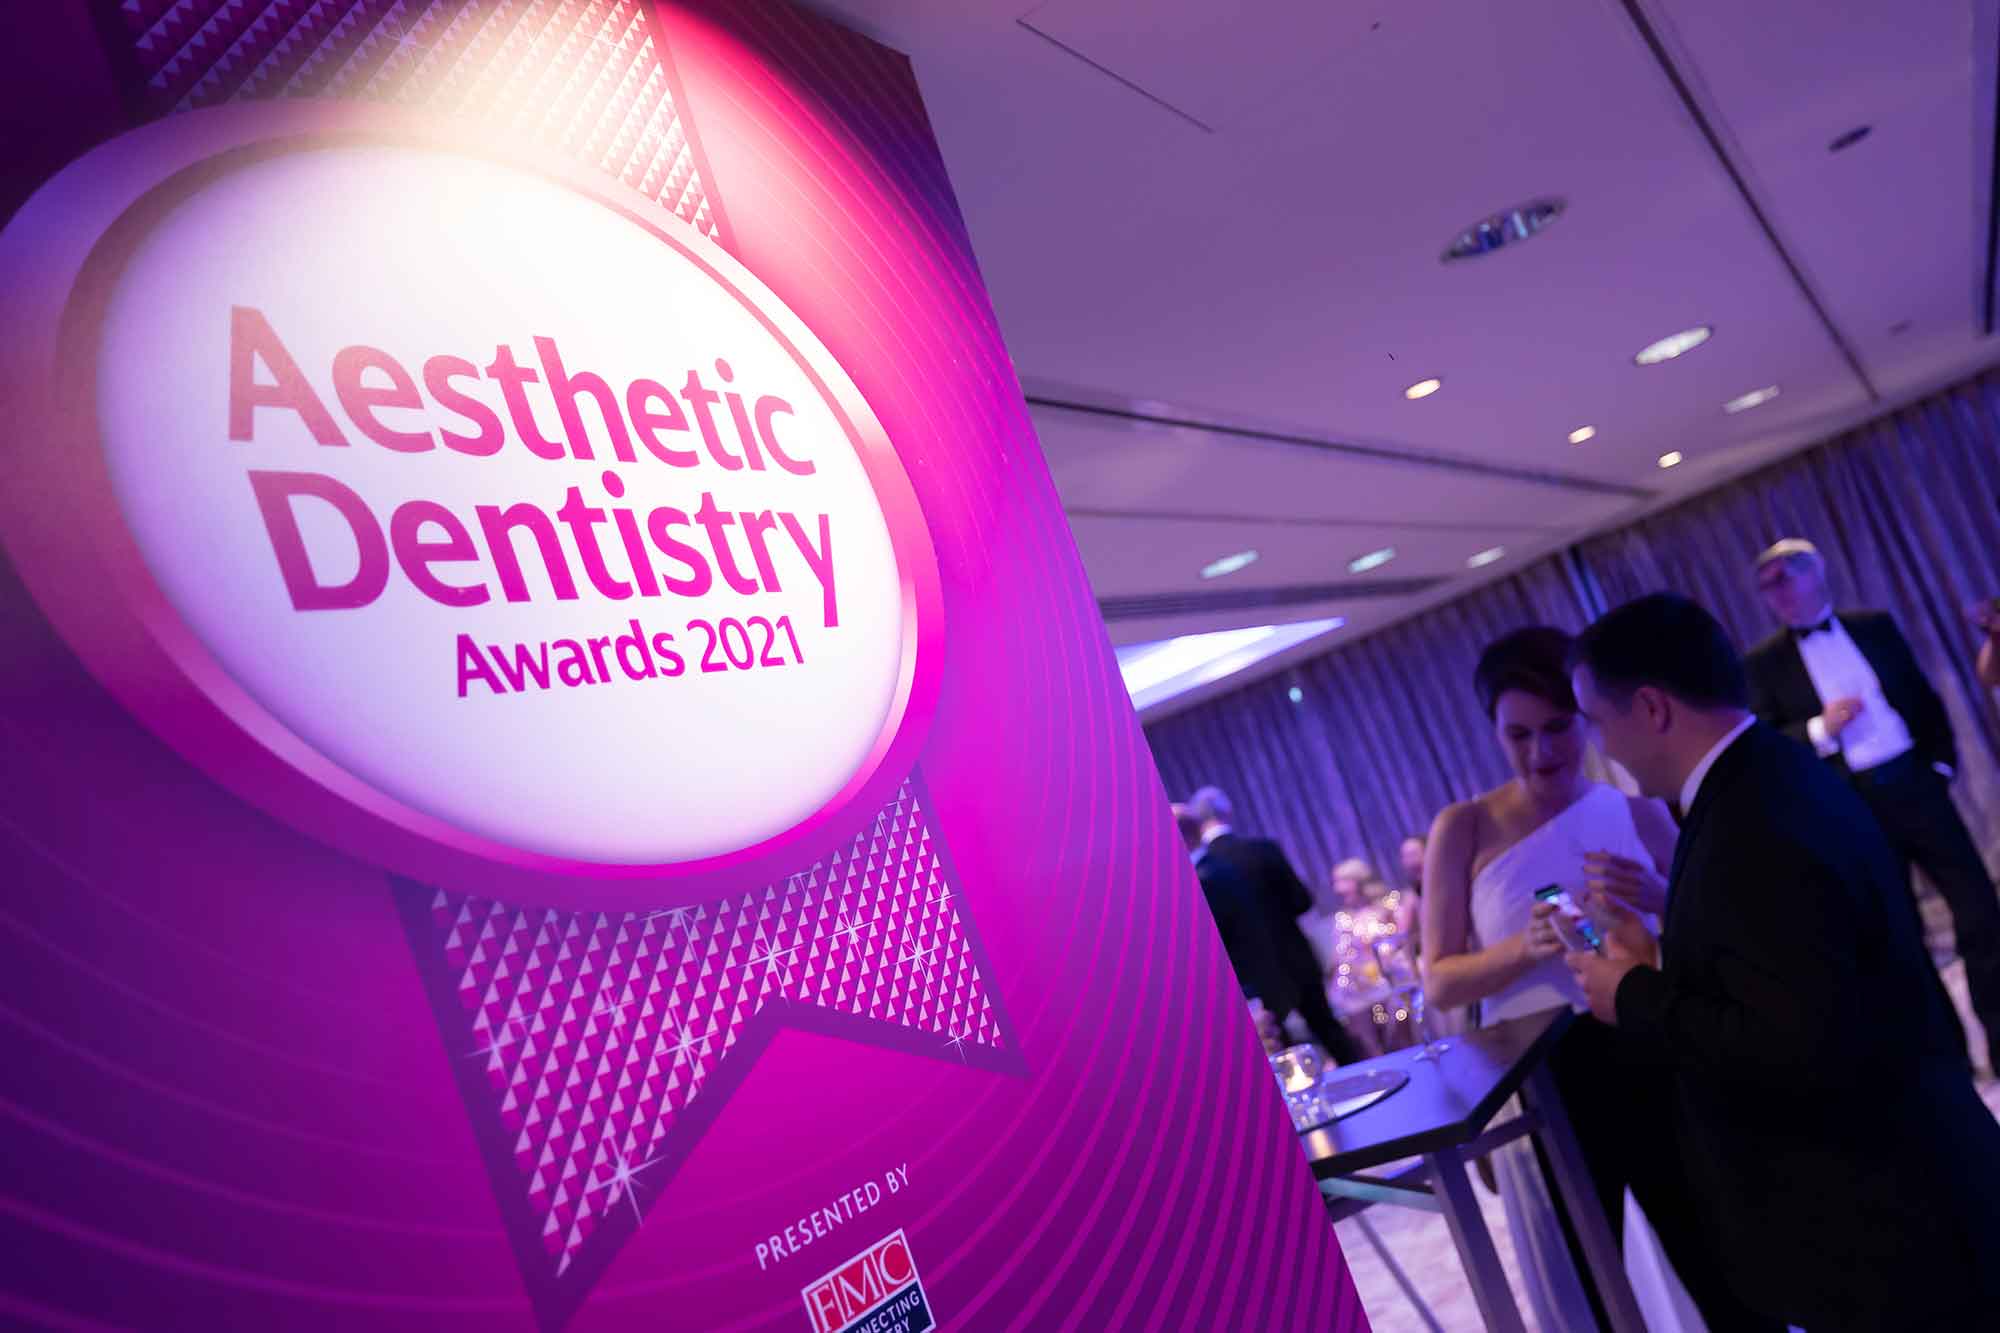 Aesthetic Dentistry Awards